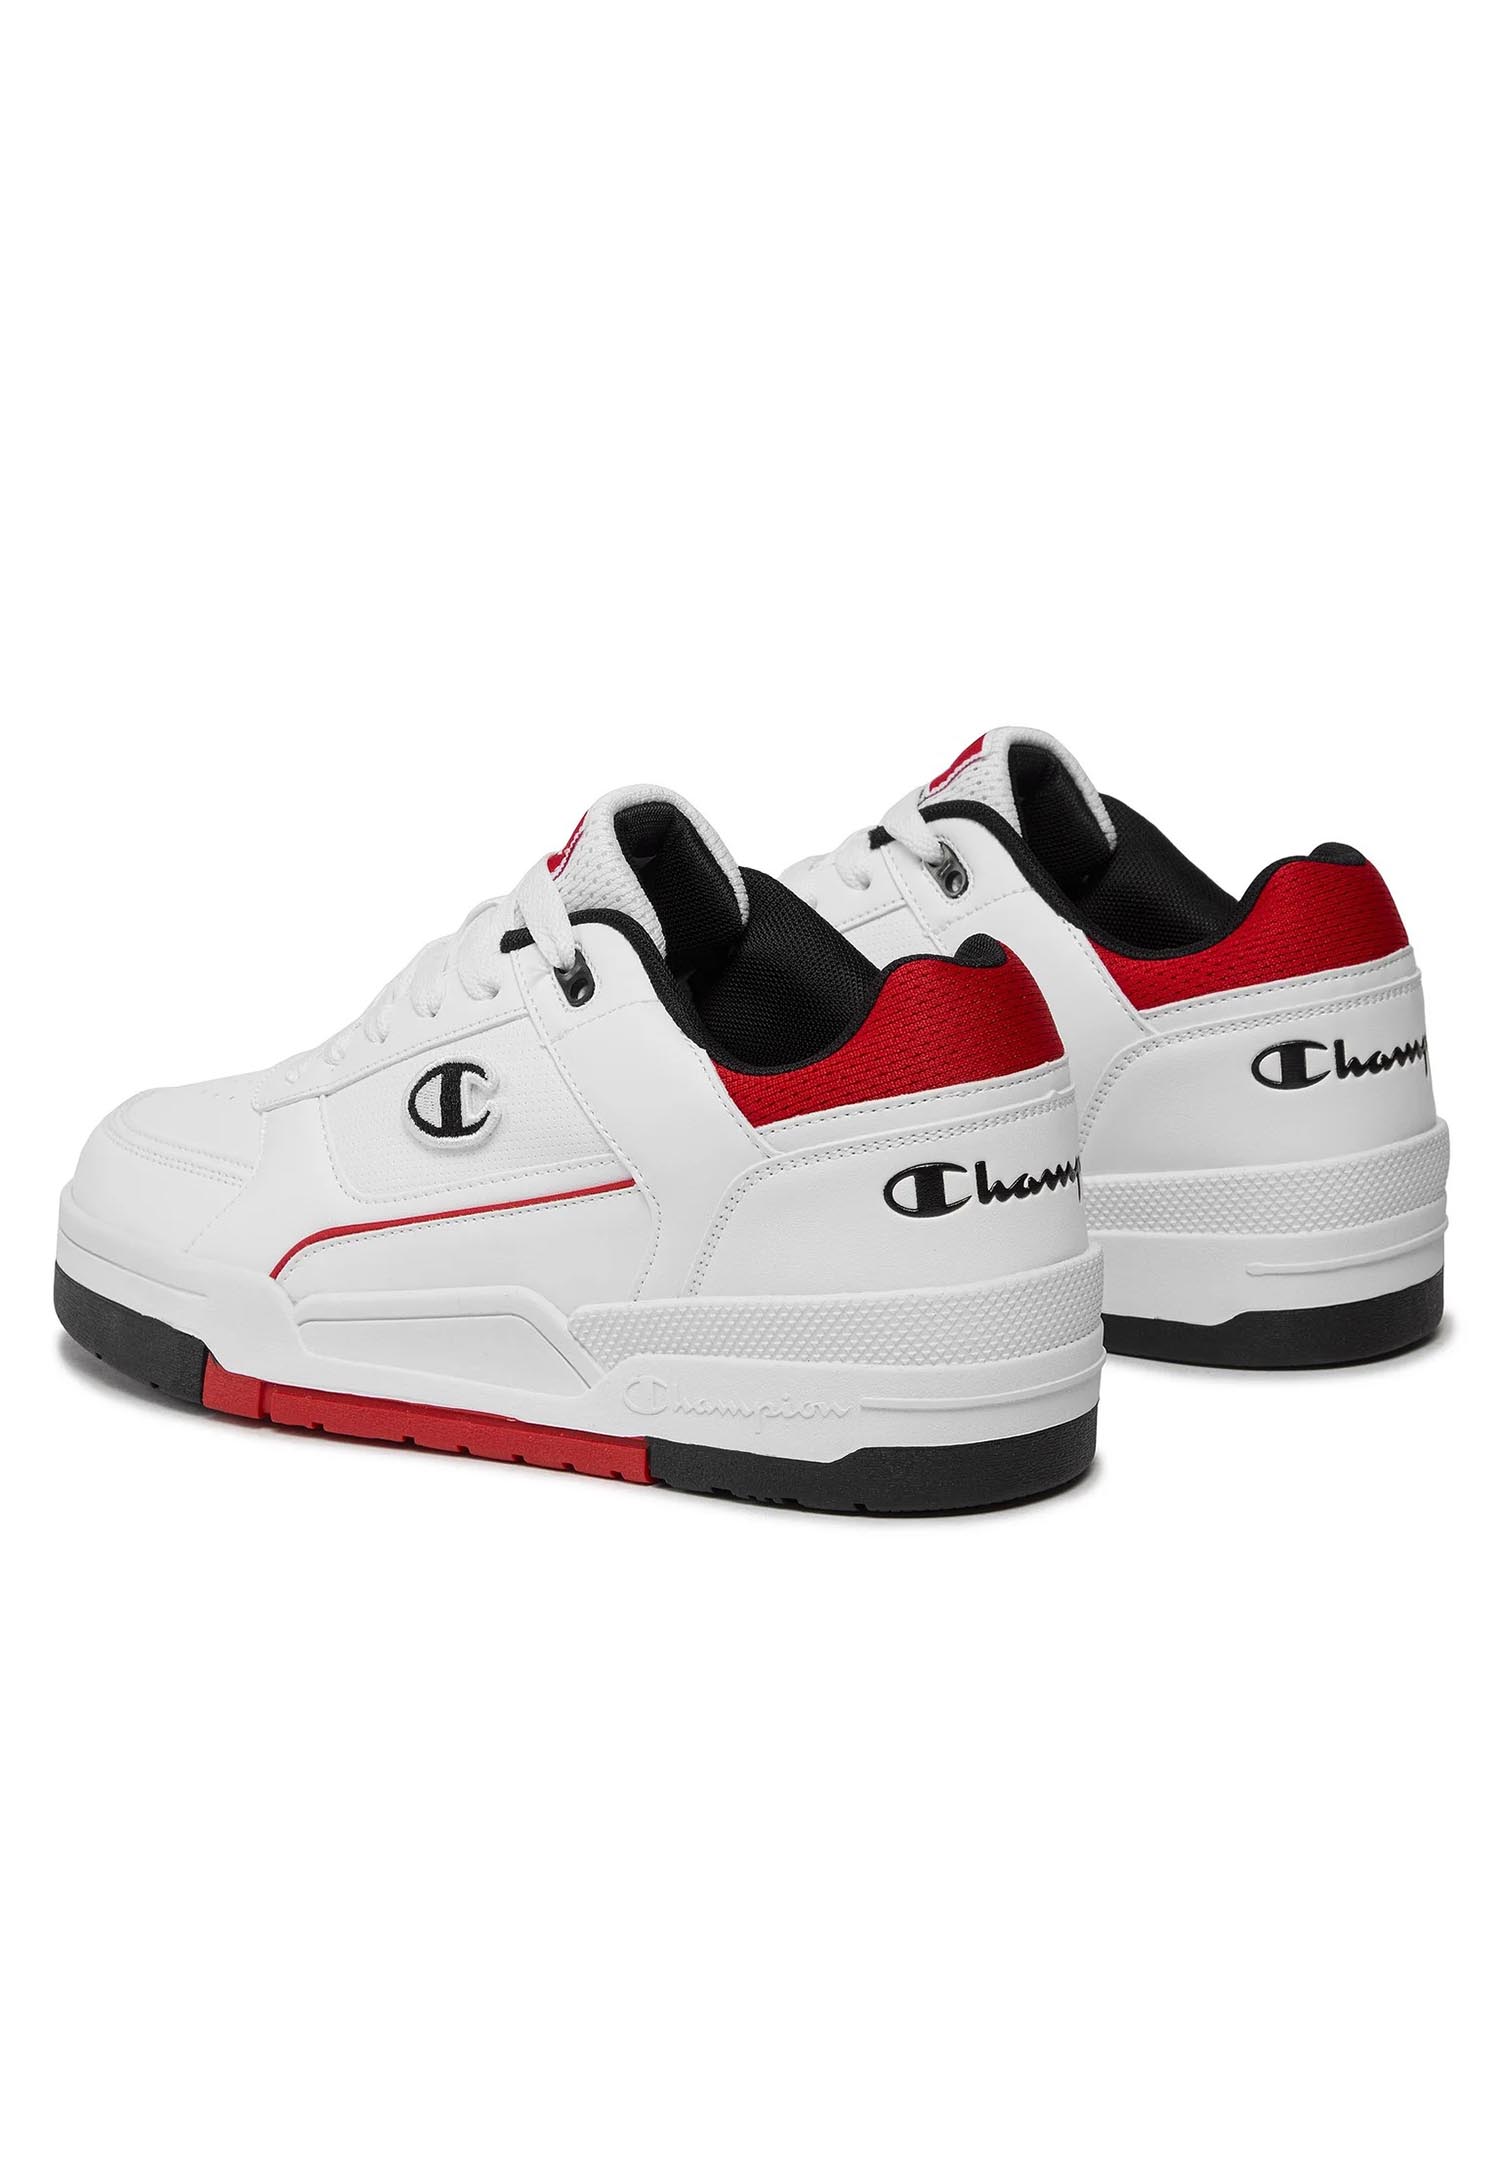 Champion REBOUND HERITAGE LOW Herren Sneaker S22030-CHA-WW012 weiß/rot/schwarz